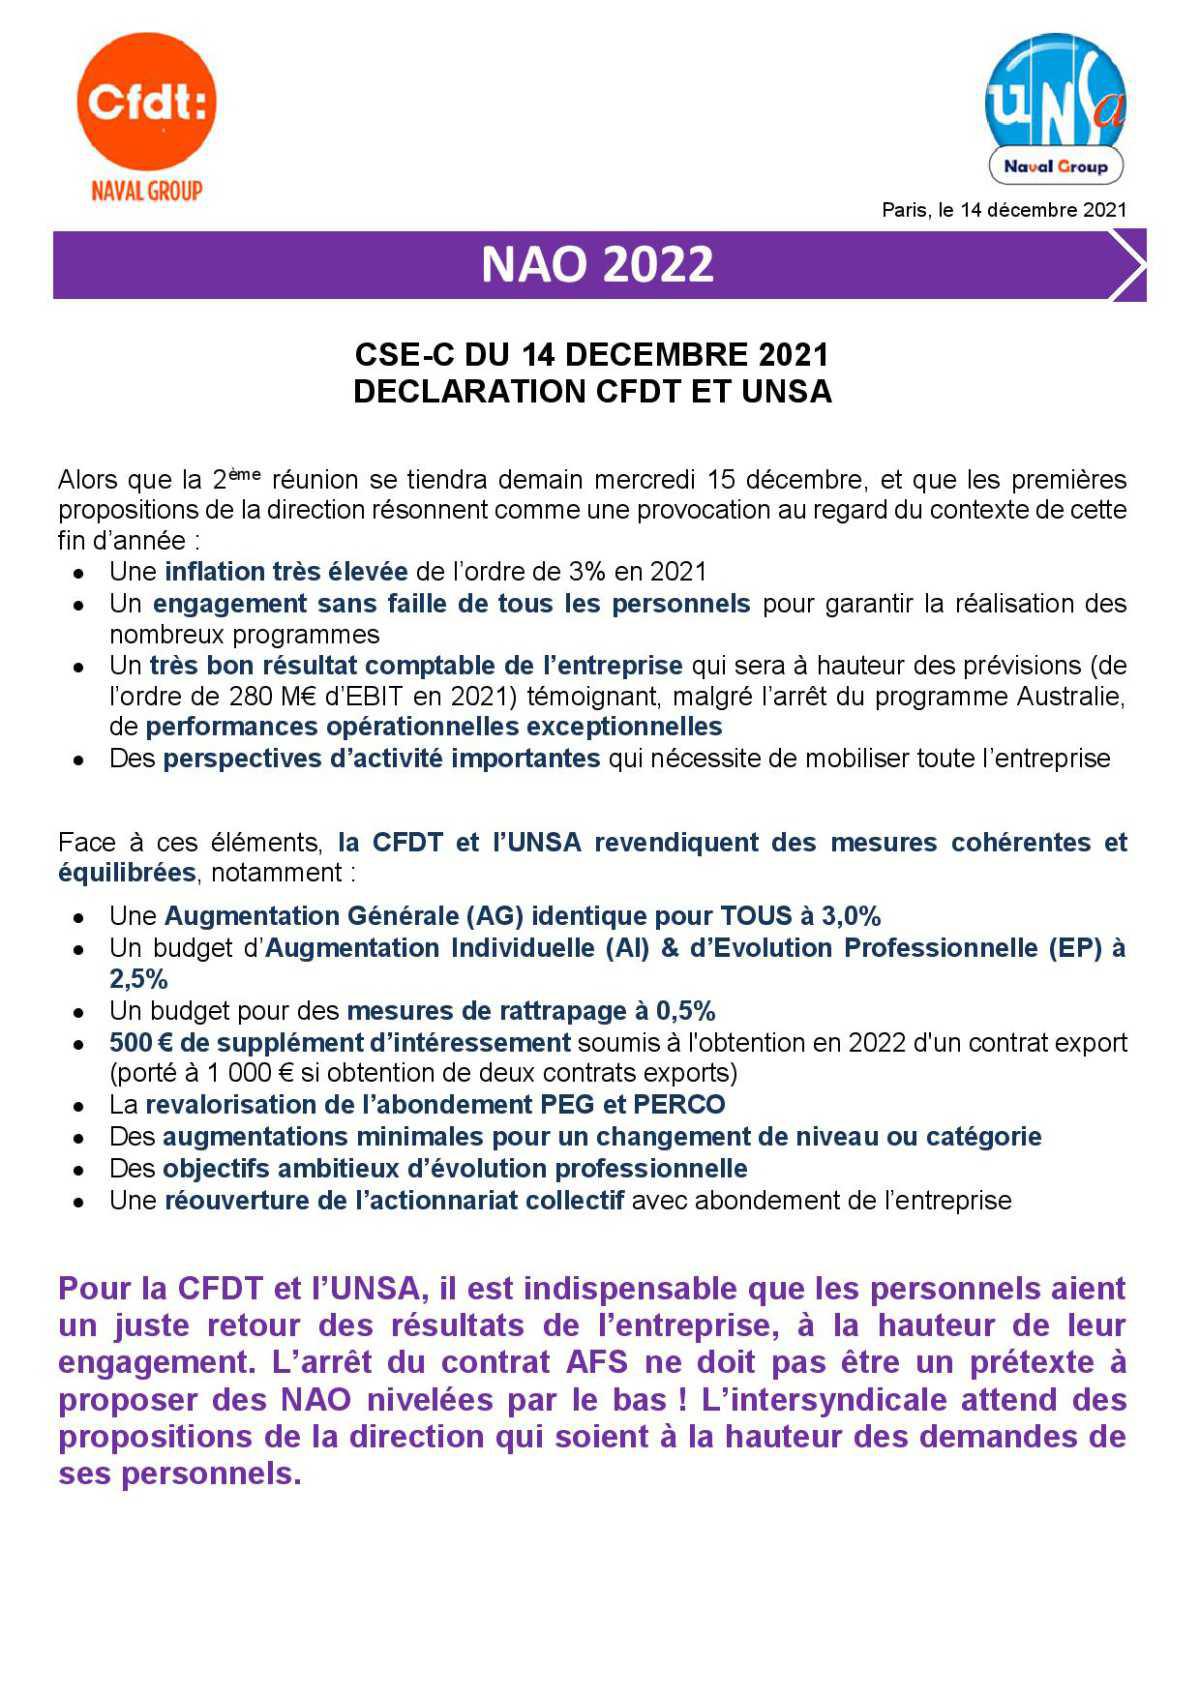 Réunion du 14 décembre 2021 - Déclaration liminaire intersyndicale CFDT/UNSA